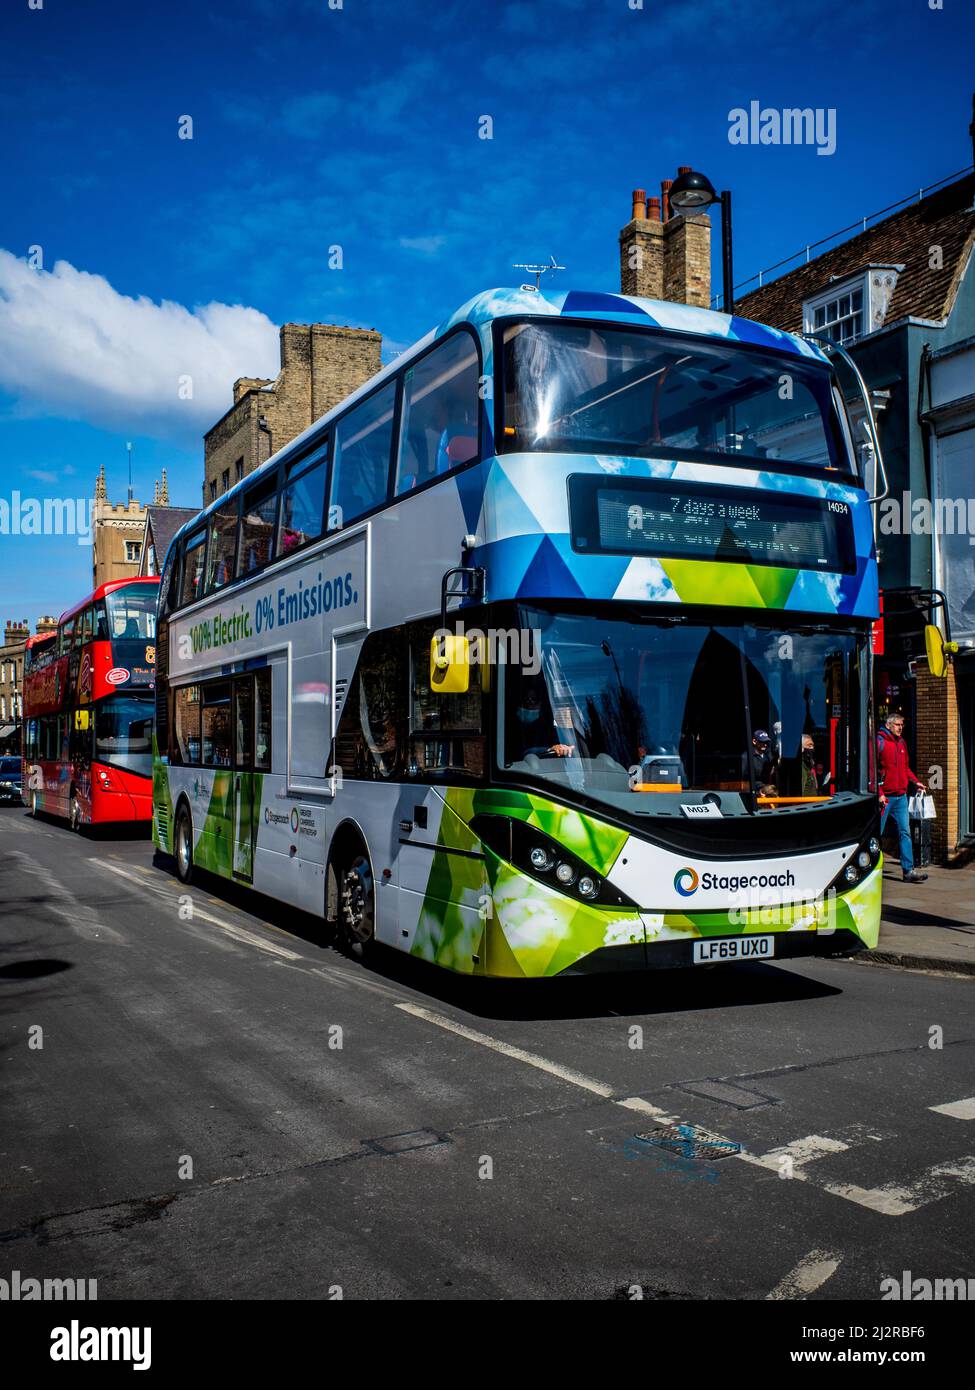 Elektrobus in Cambridge, Großbritannien. 100% elektrischer Doppeldeckerbus betrieben von Stagecoach. Zero Emission - 8 Stunden Ladezeit für eine Reichweite von 160 Meilen. Stockfoto